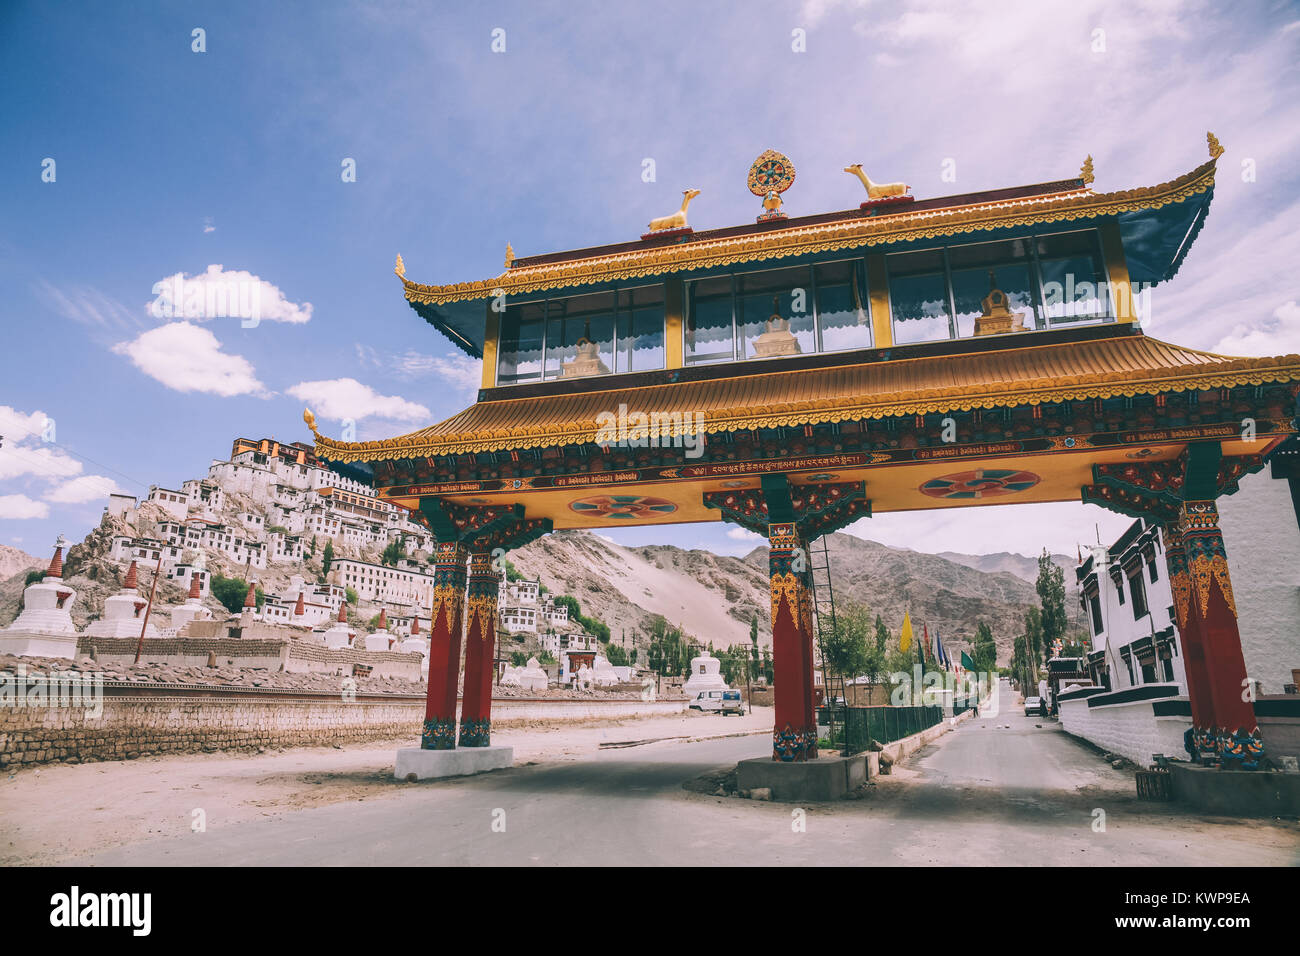 La porte de l'amitié et la ville de Leh, Himalaya Indien Banque D'Images